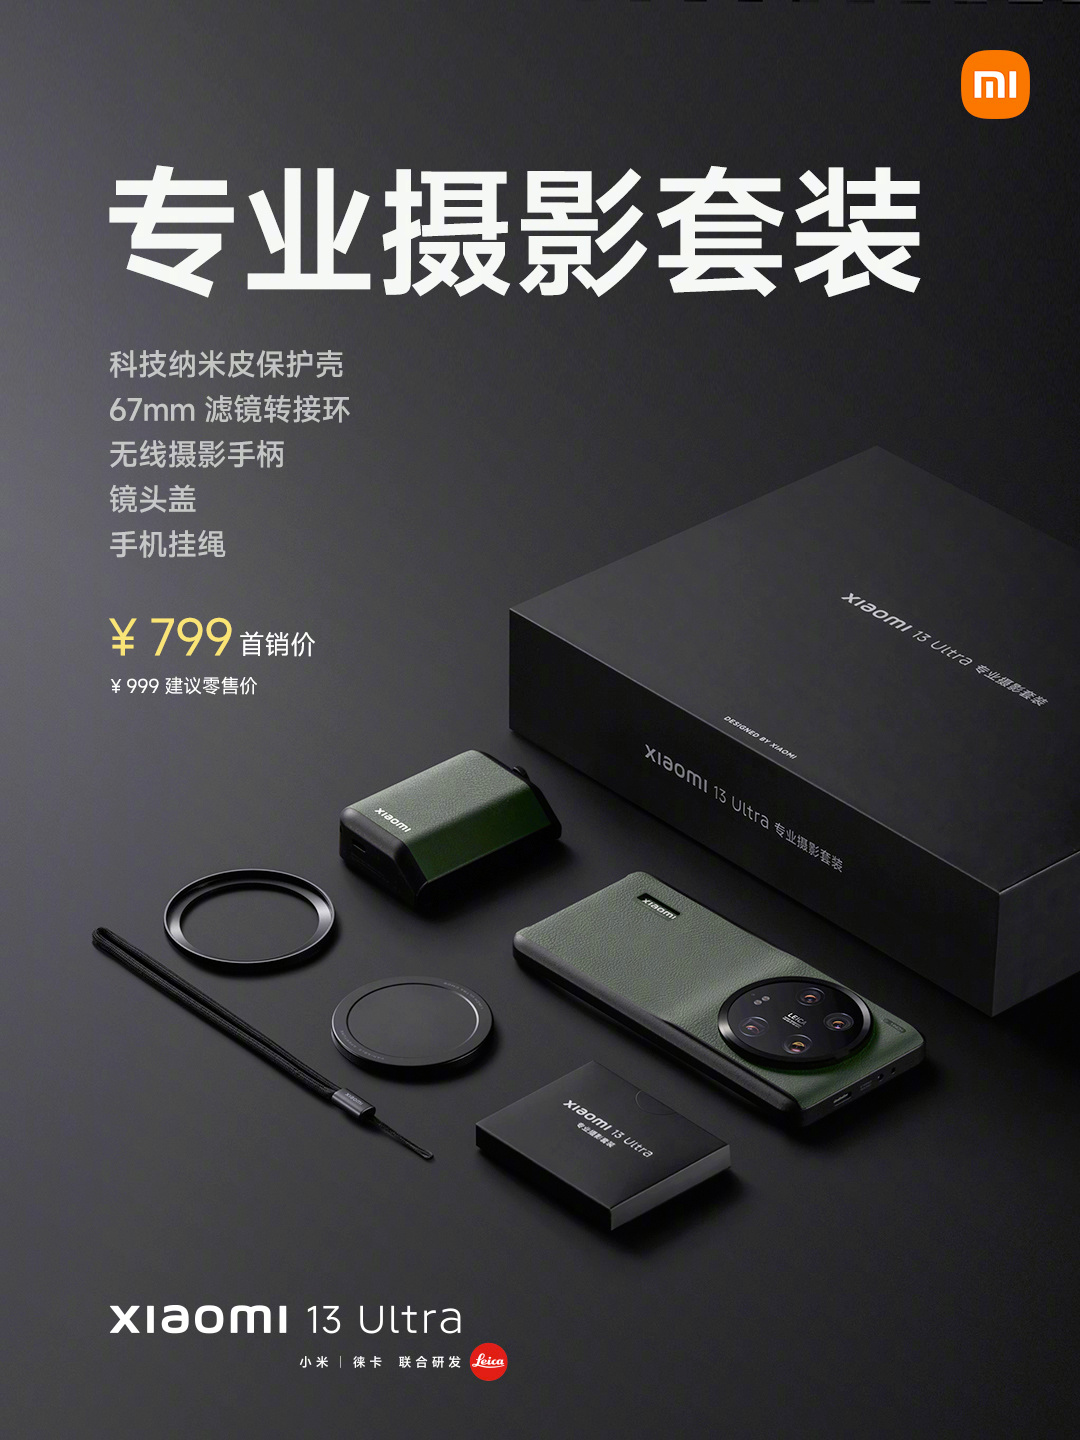 Smartphone Xiaomi 13 Ultra